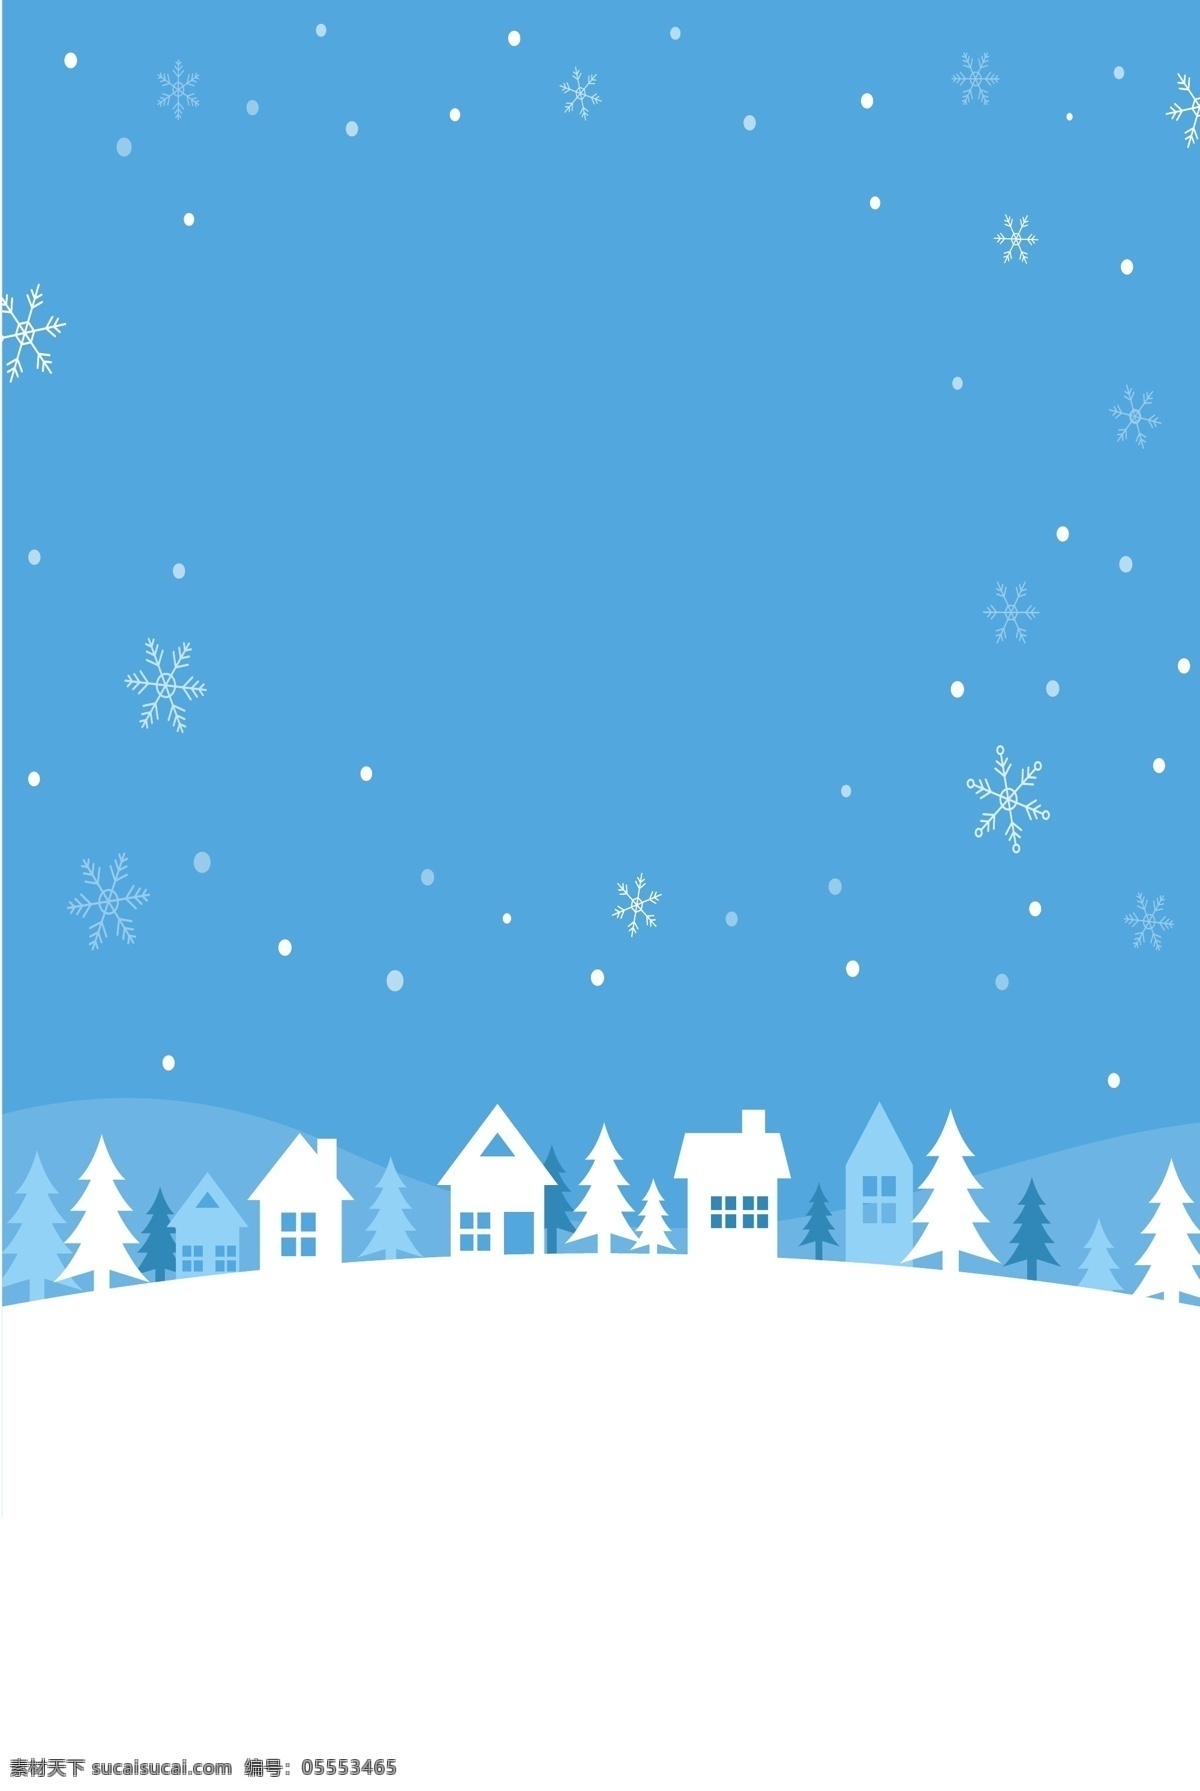 圣诞 雪地 冬天 卡通 展板 背景 雪花 雪人 冬季 冬至素材 冬至快乐 冬至来了 冬至节 冬至背景